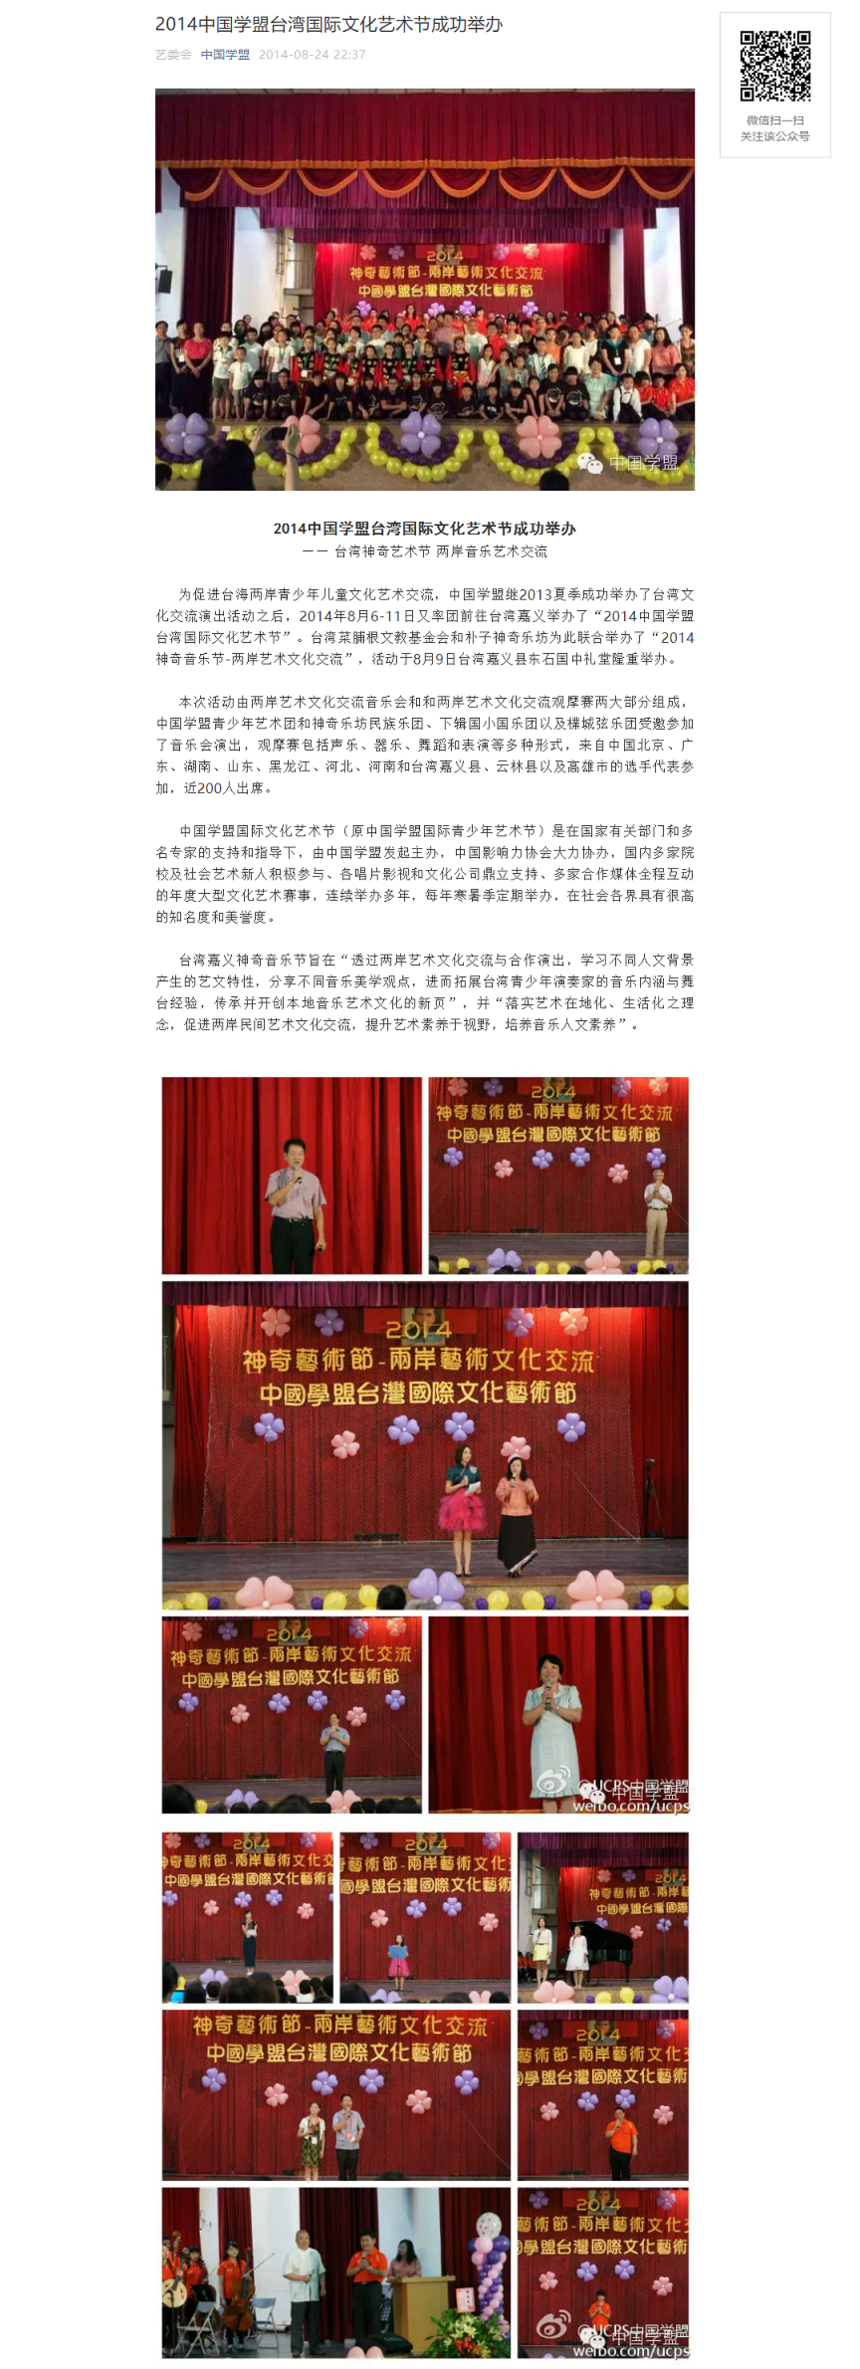 2014中国学盟台湾国际文化艺术节成功举办1.1.png